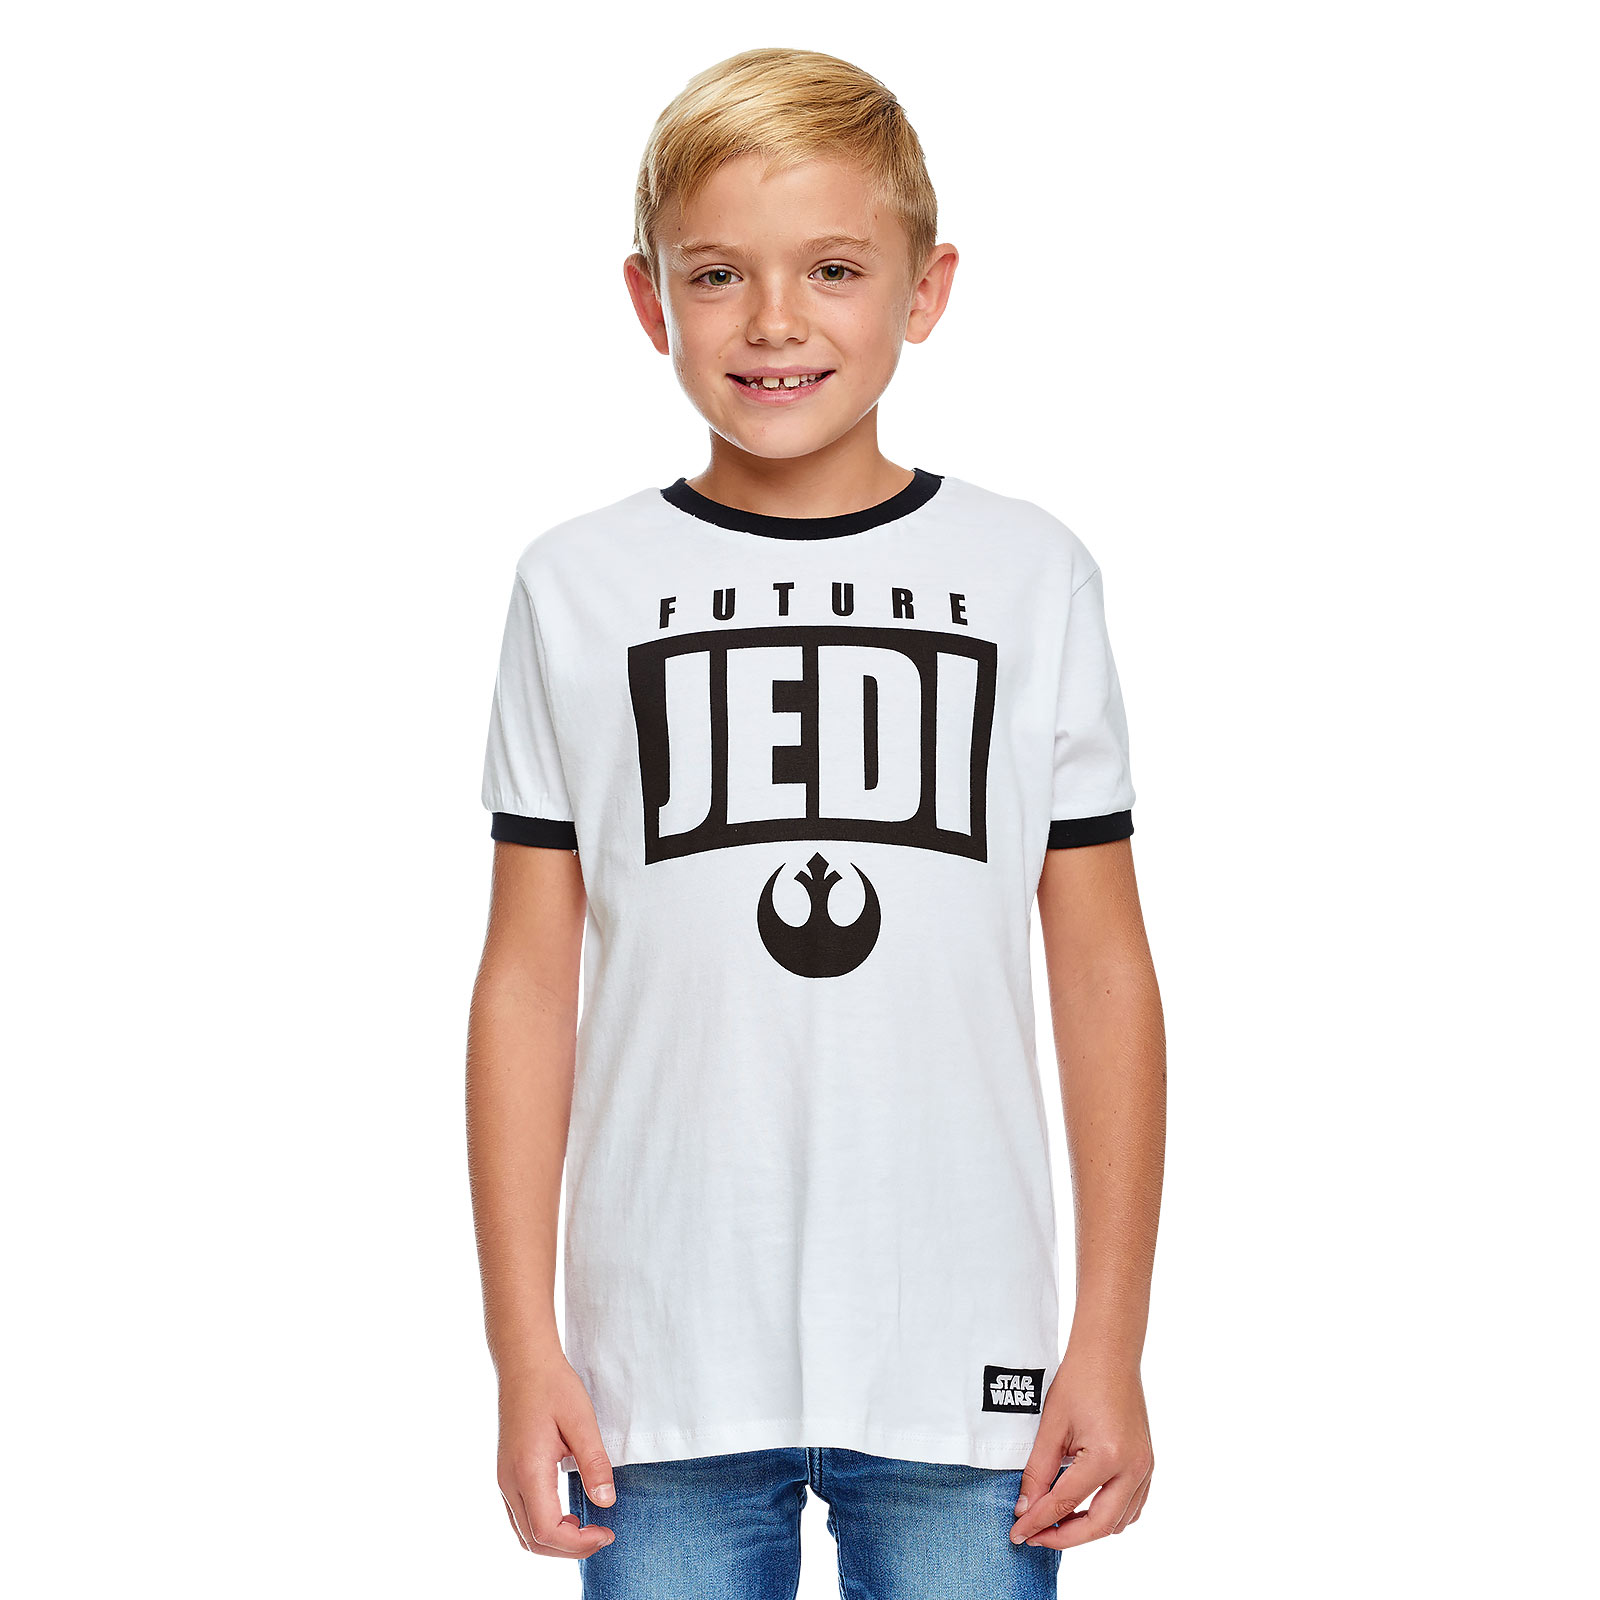 Star Wars - Future Jedi T-shirt pour enfants blanc